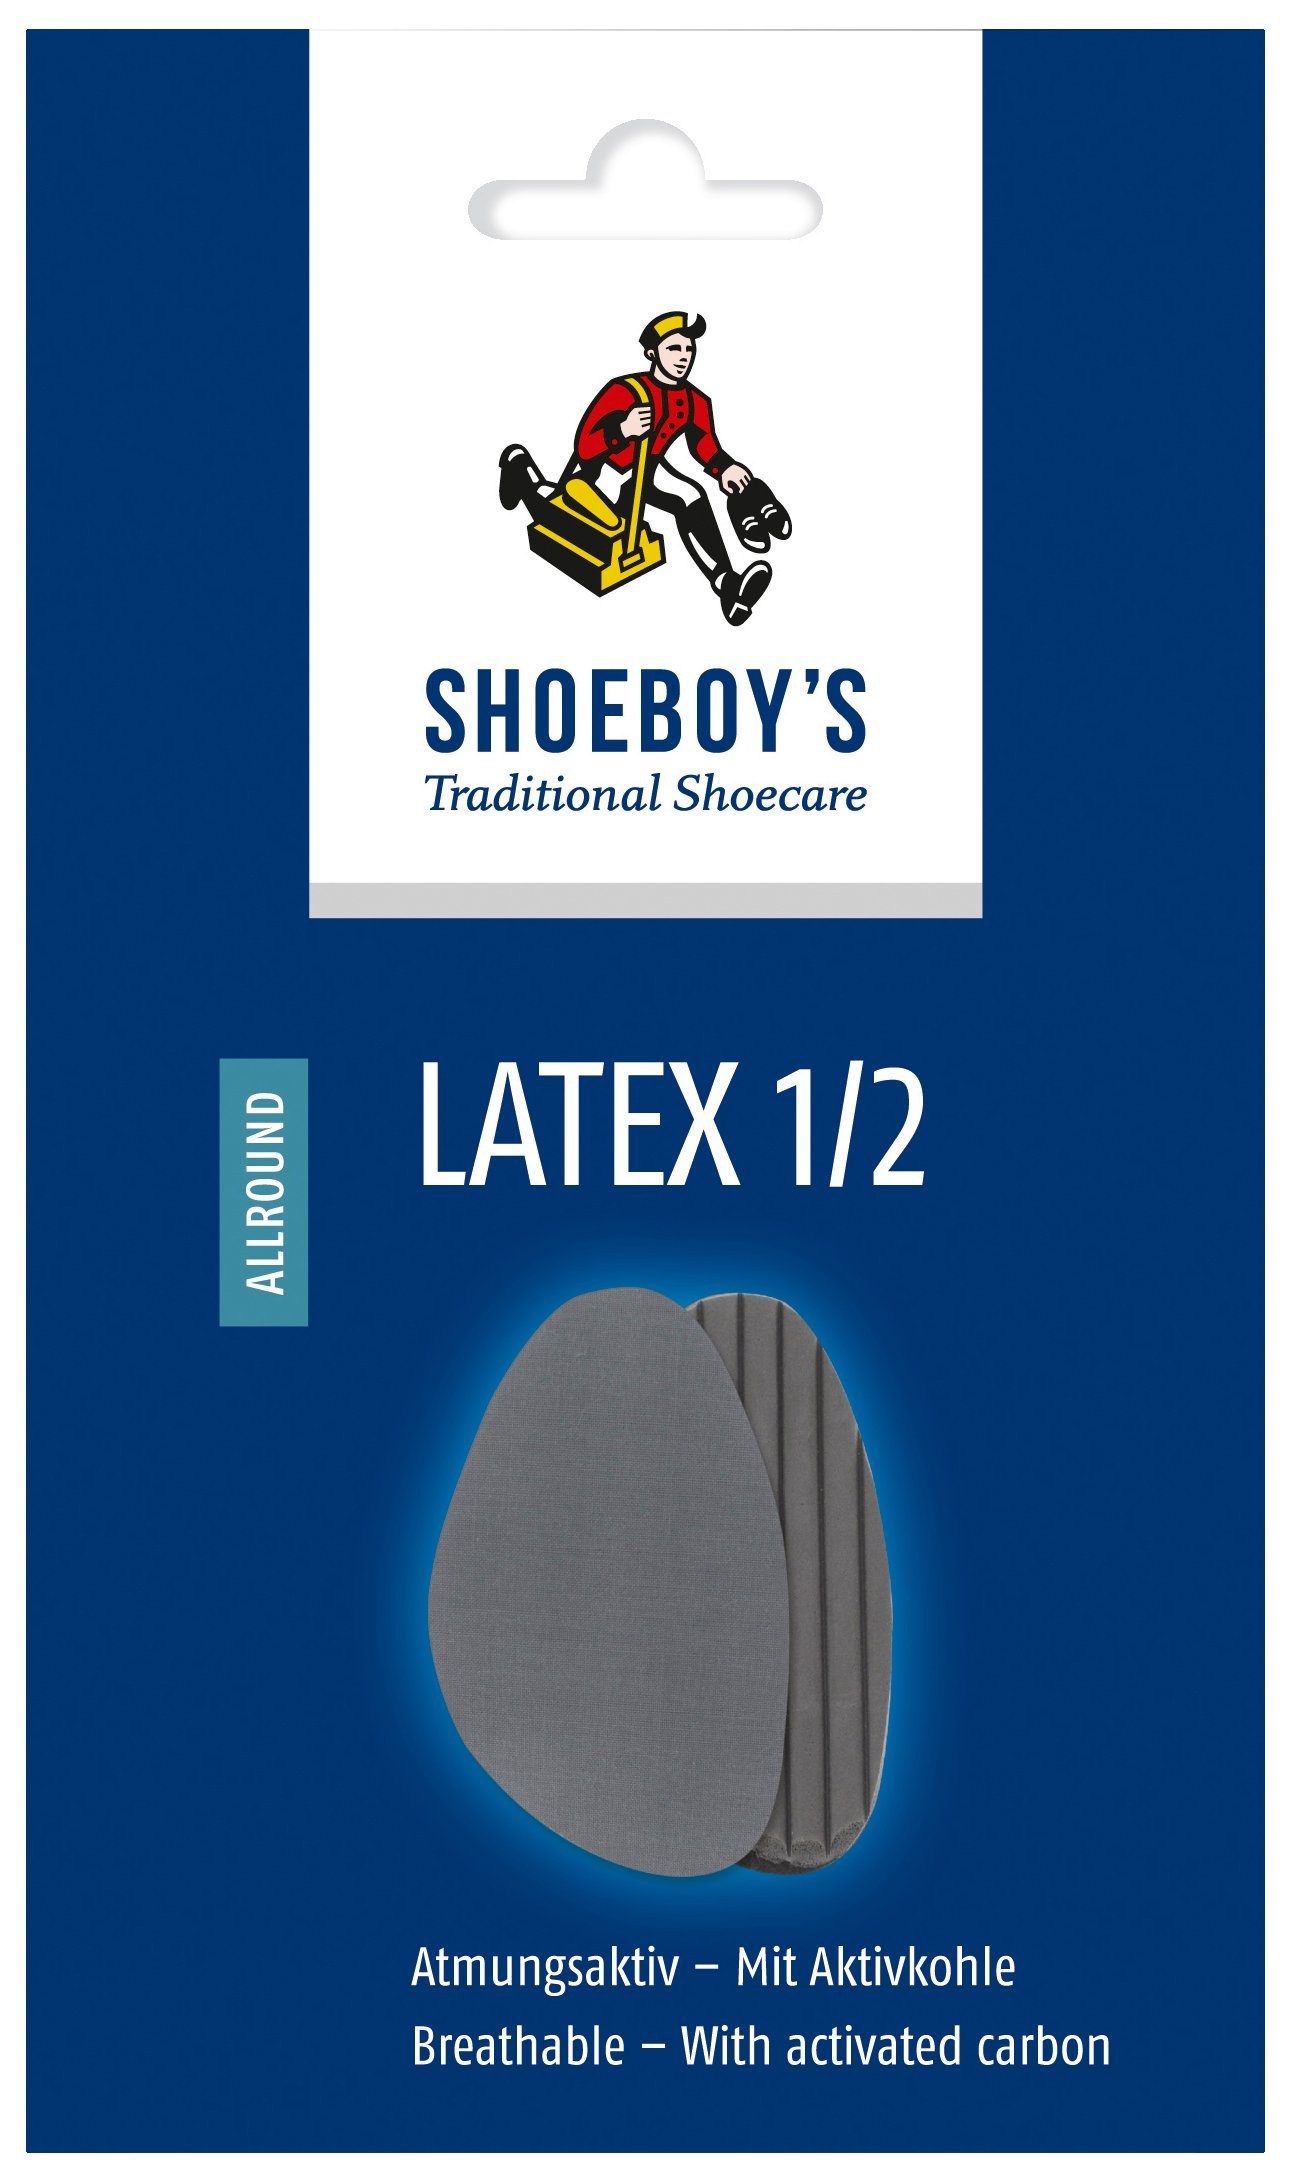 Shoeboys Halbsohlen Latex 1/2 - Angenehm weiche Halbsohle aus mehrschichtigem Latexschaum